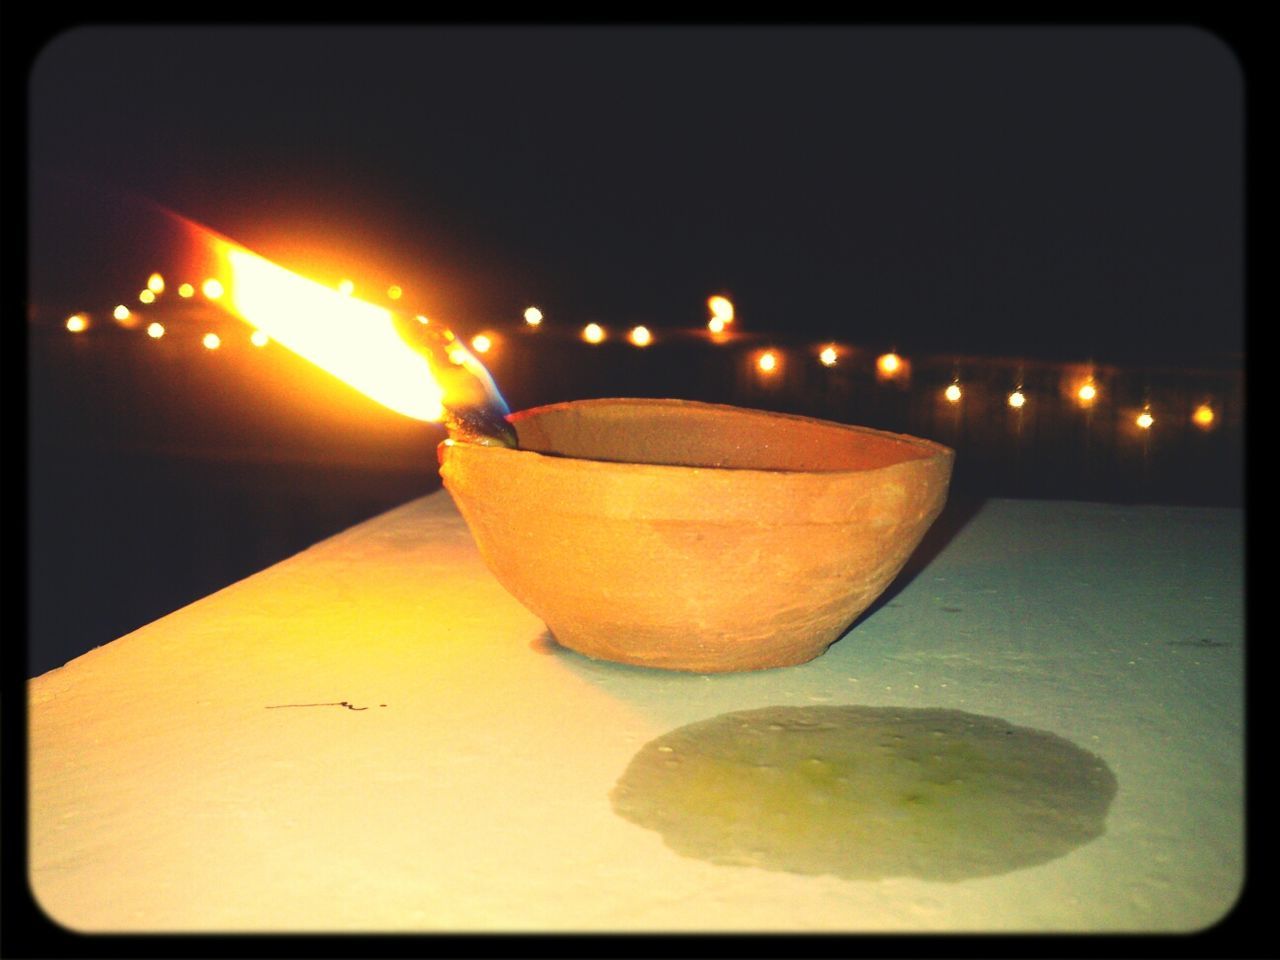 Close-up of diwali oil lamp burning